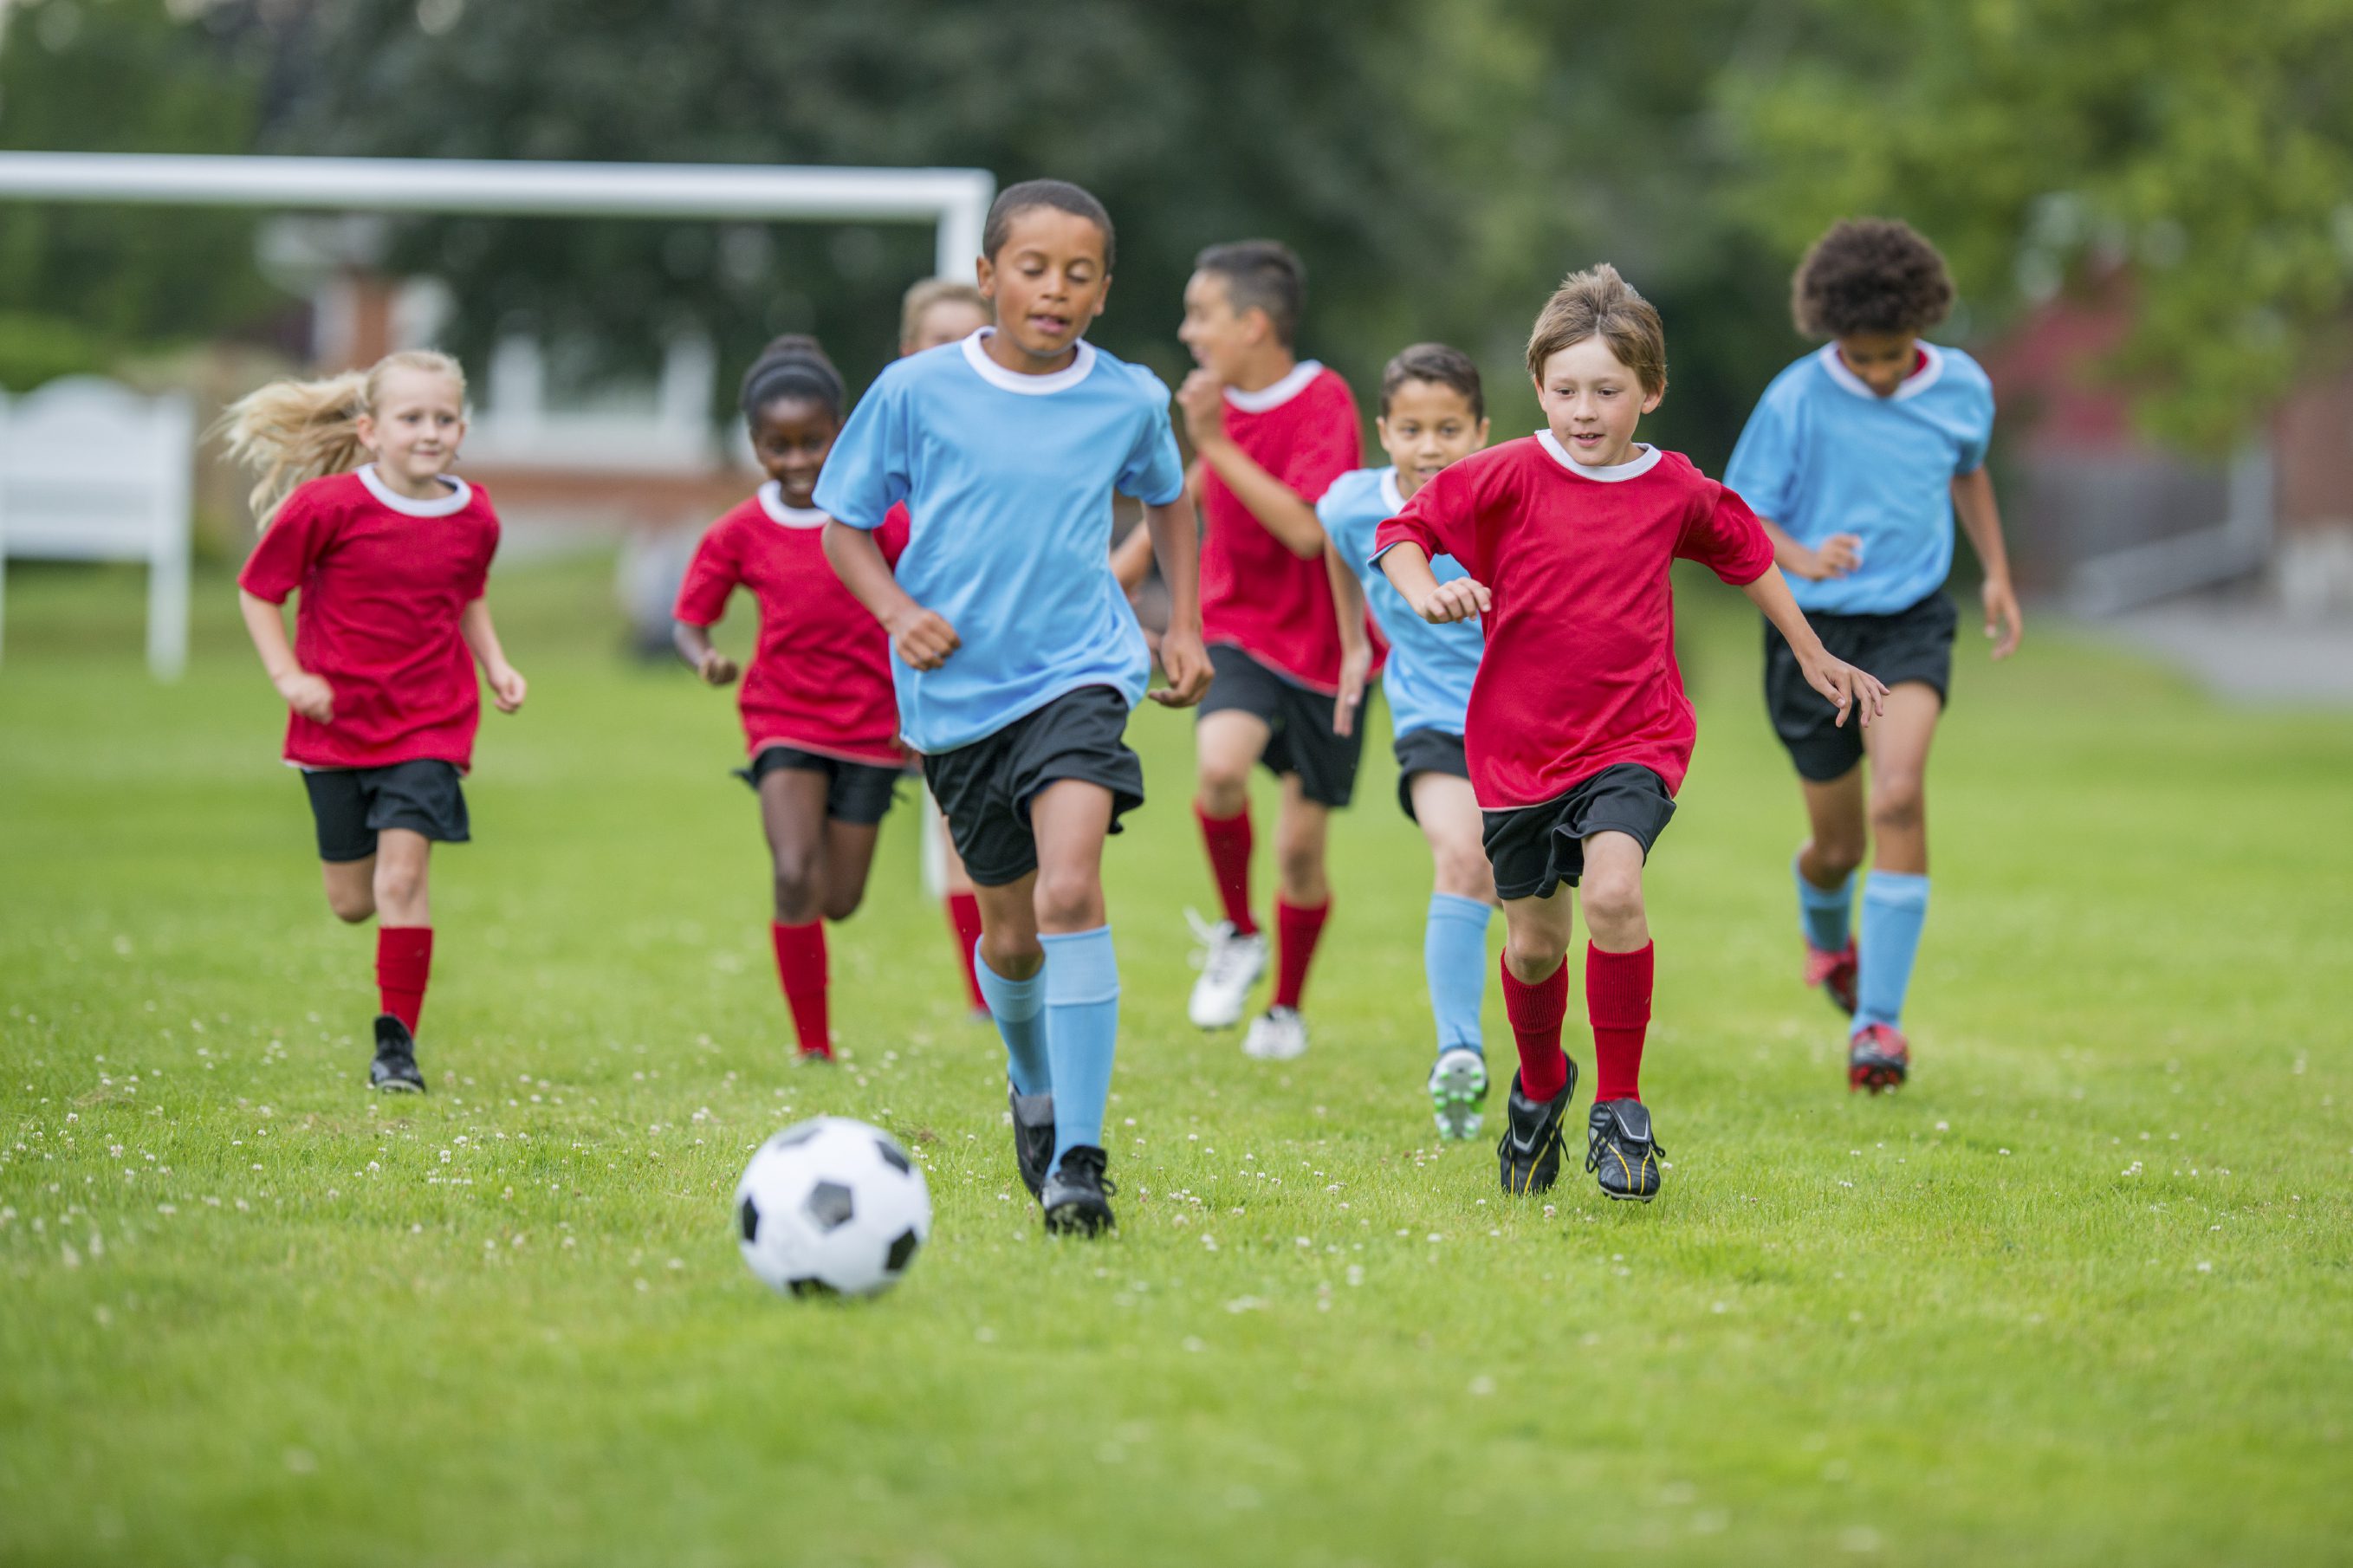 Kids sports sportsmanship rice psychology